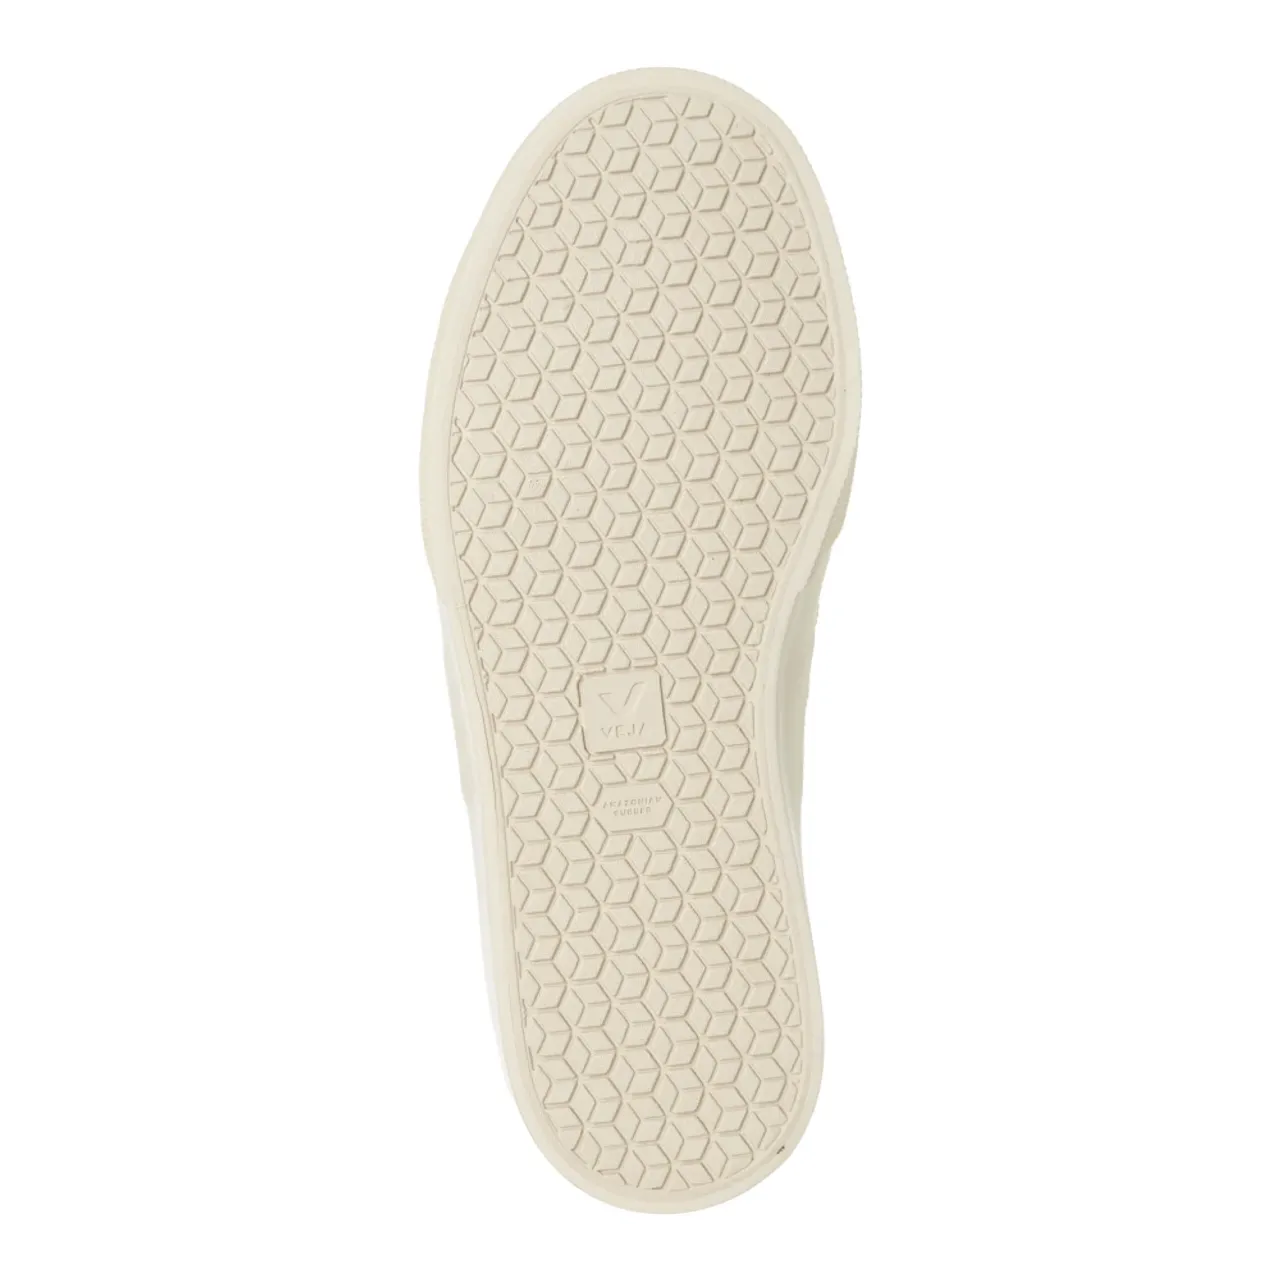 Veja , Winter Sneakers - Plain Pattern ,White female, Sizes: